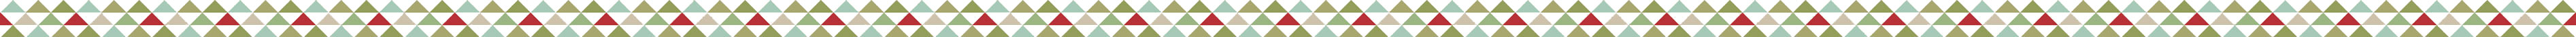 multicoloured triangle pattern